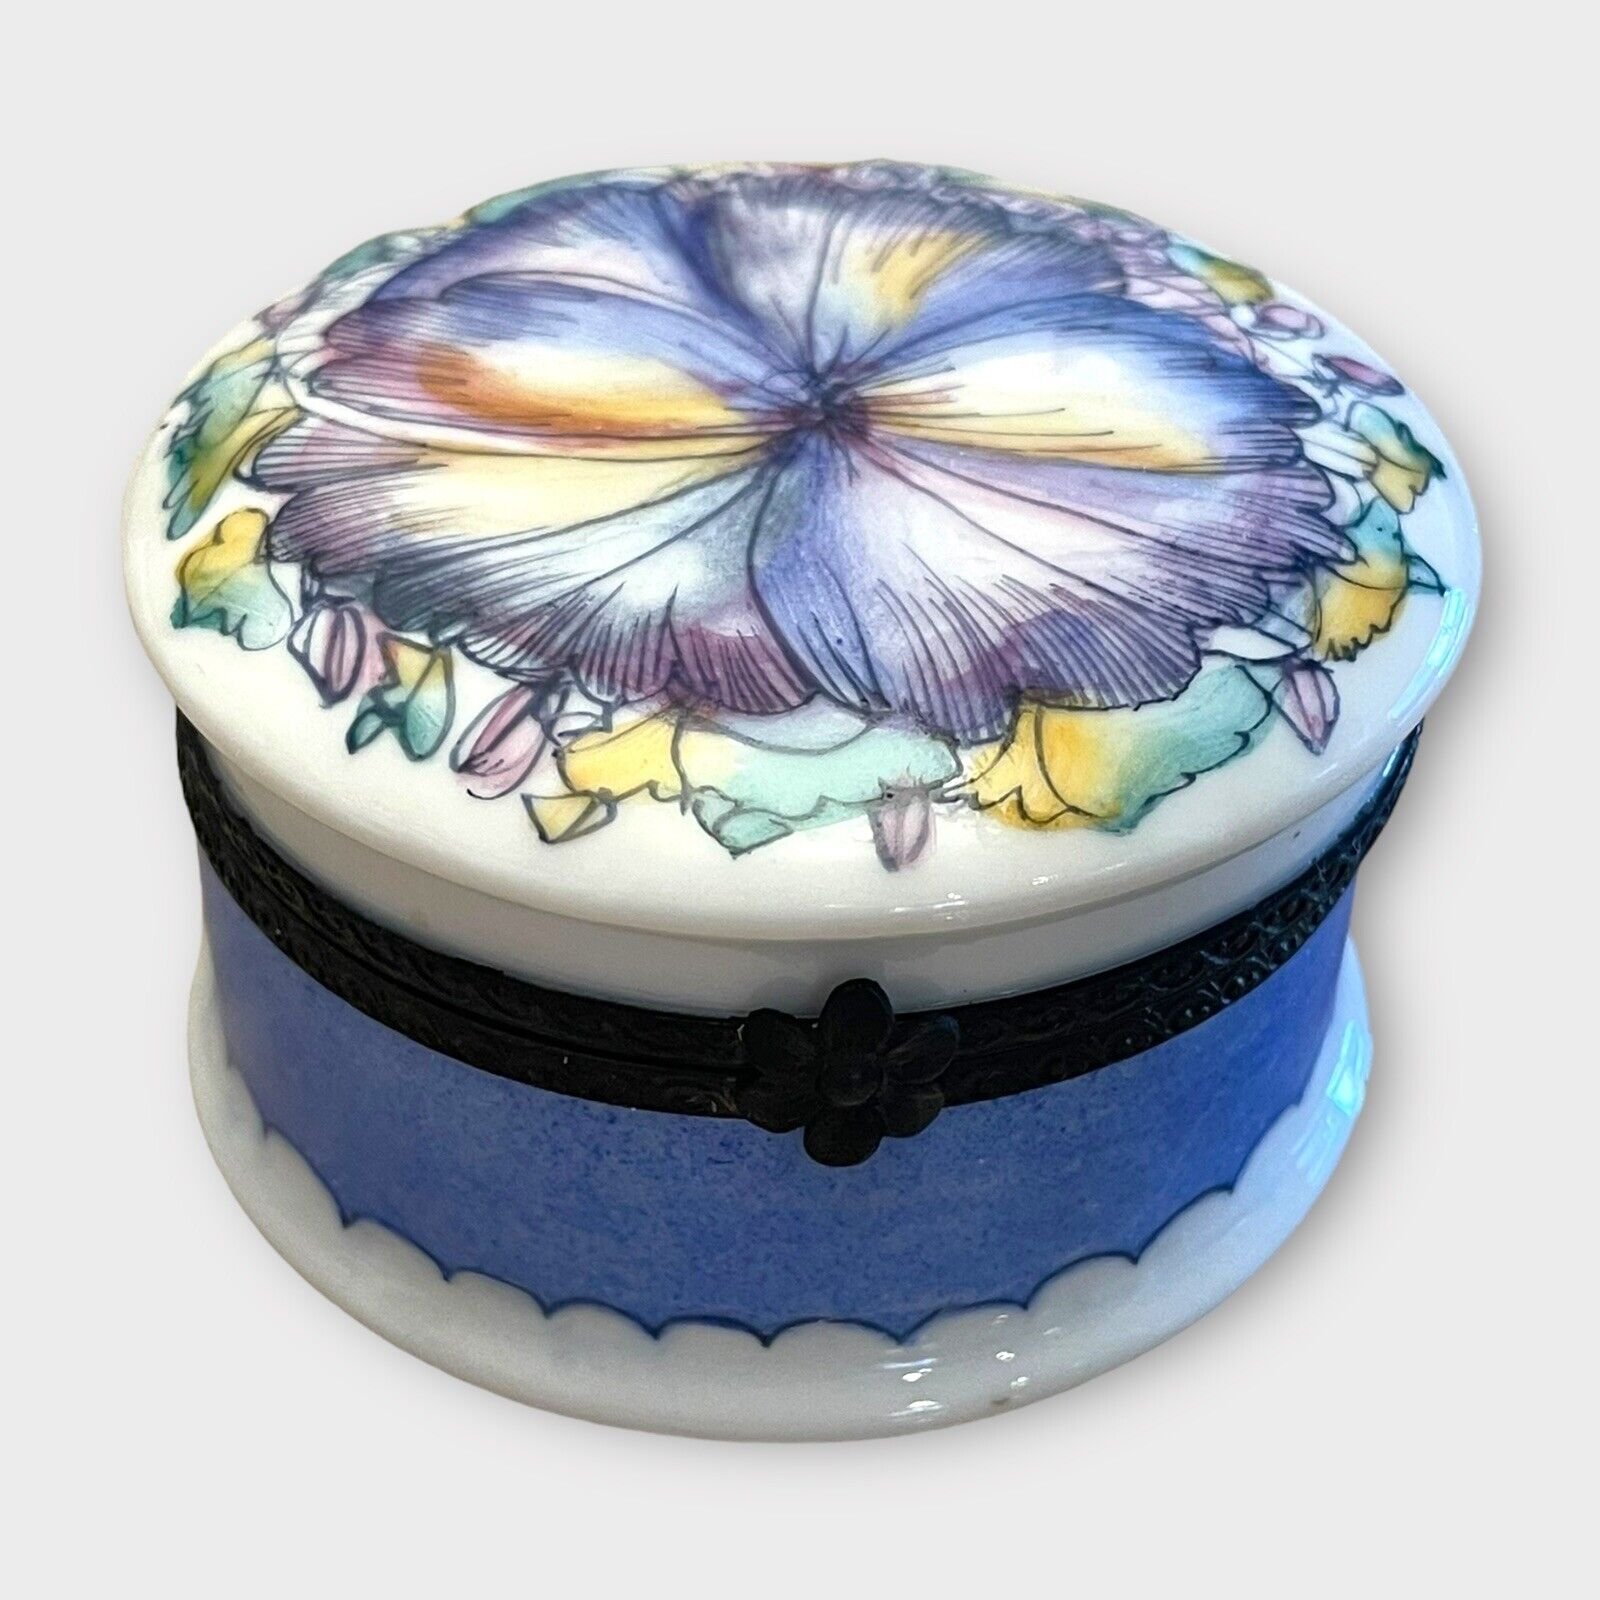 Vintage Limoges Trinket Box Diameter 3” Blue Flower Decorated Porcelain France